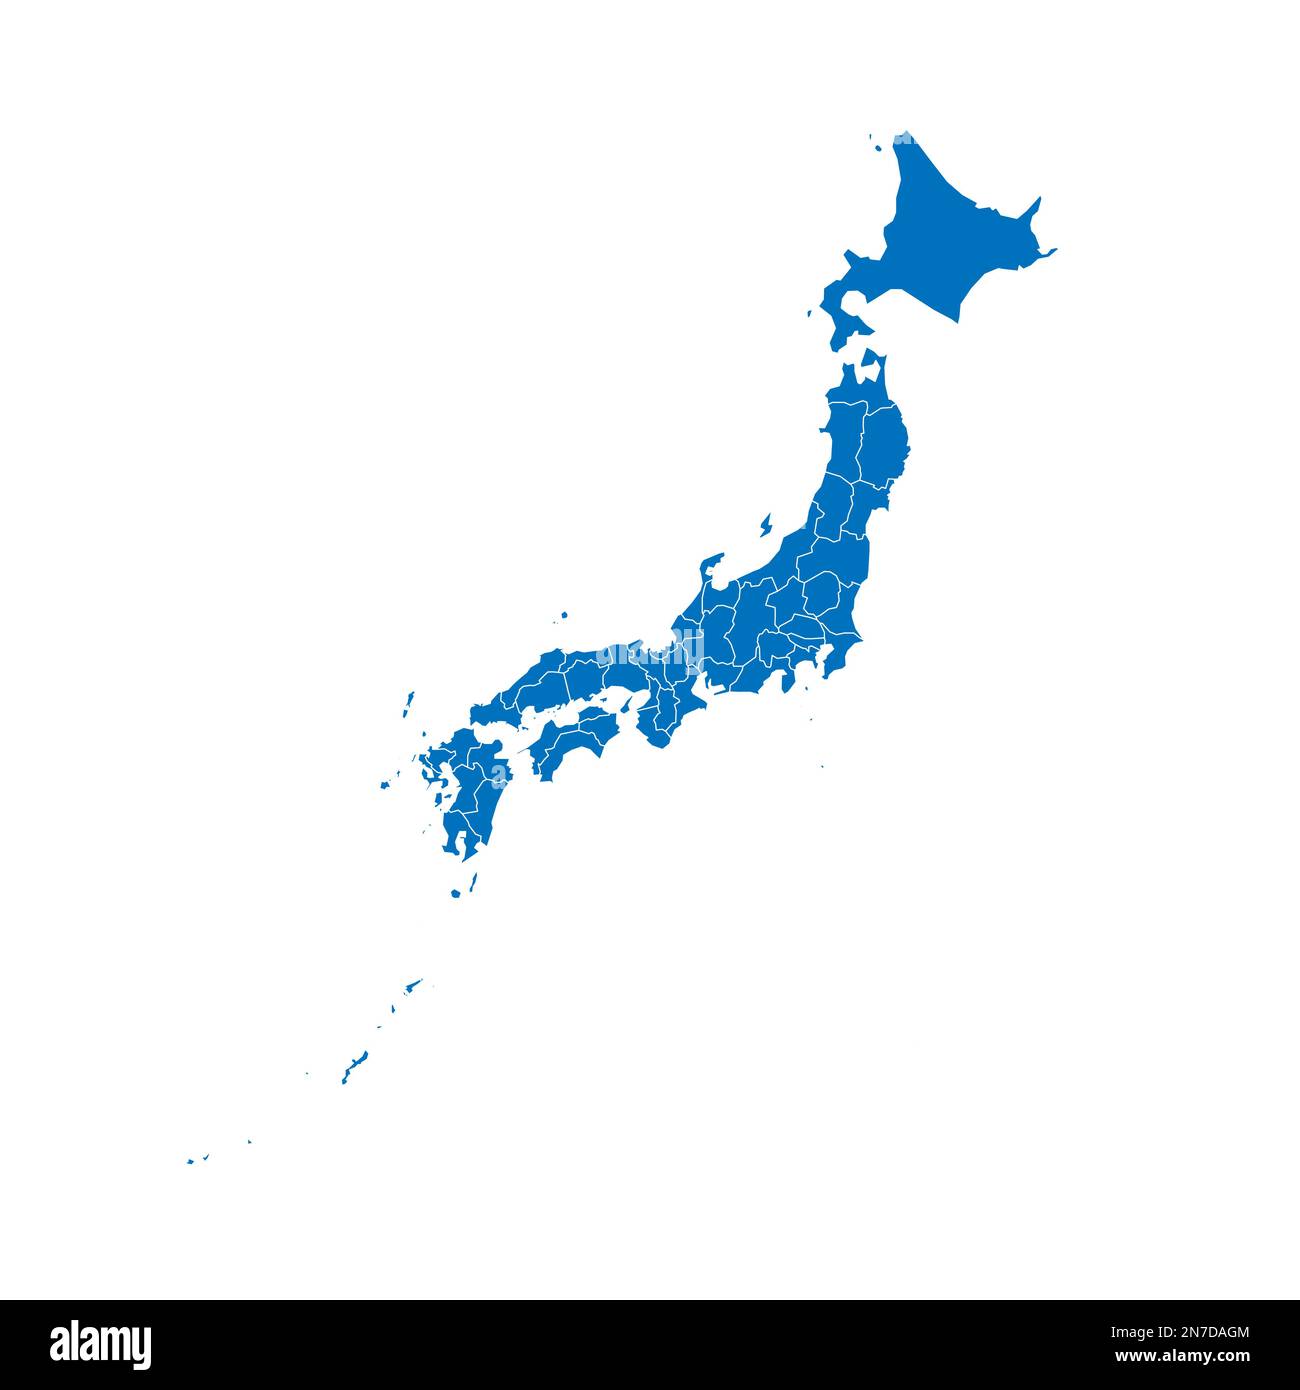 Politische Karte der Verwaltungseinheiten Japans - Präfekturen, Metropilis Tokio, Territorium Hokaido und städtische Präfekturen Kyoto und Osaka. Leuchtet blau b Stock Vektor